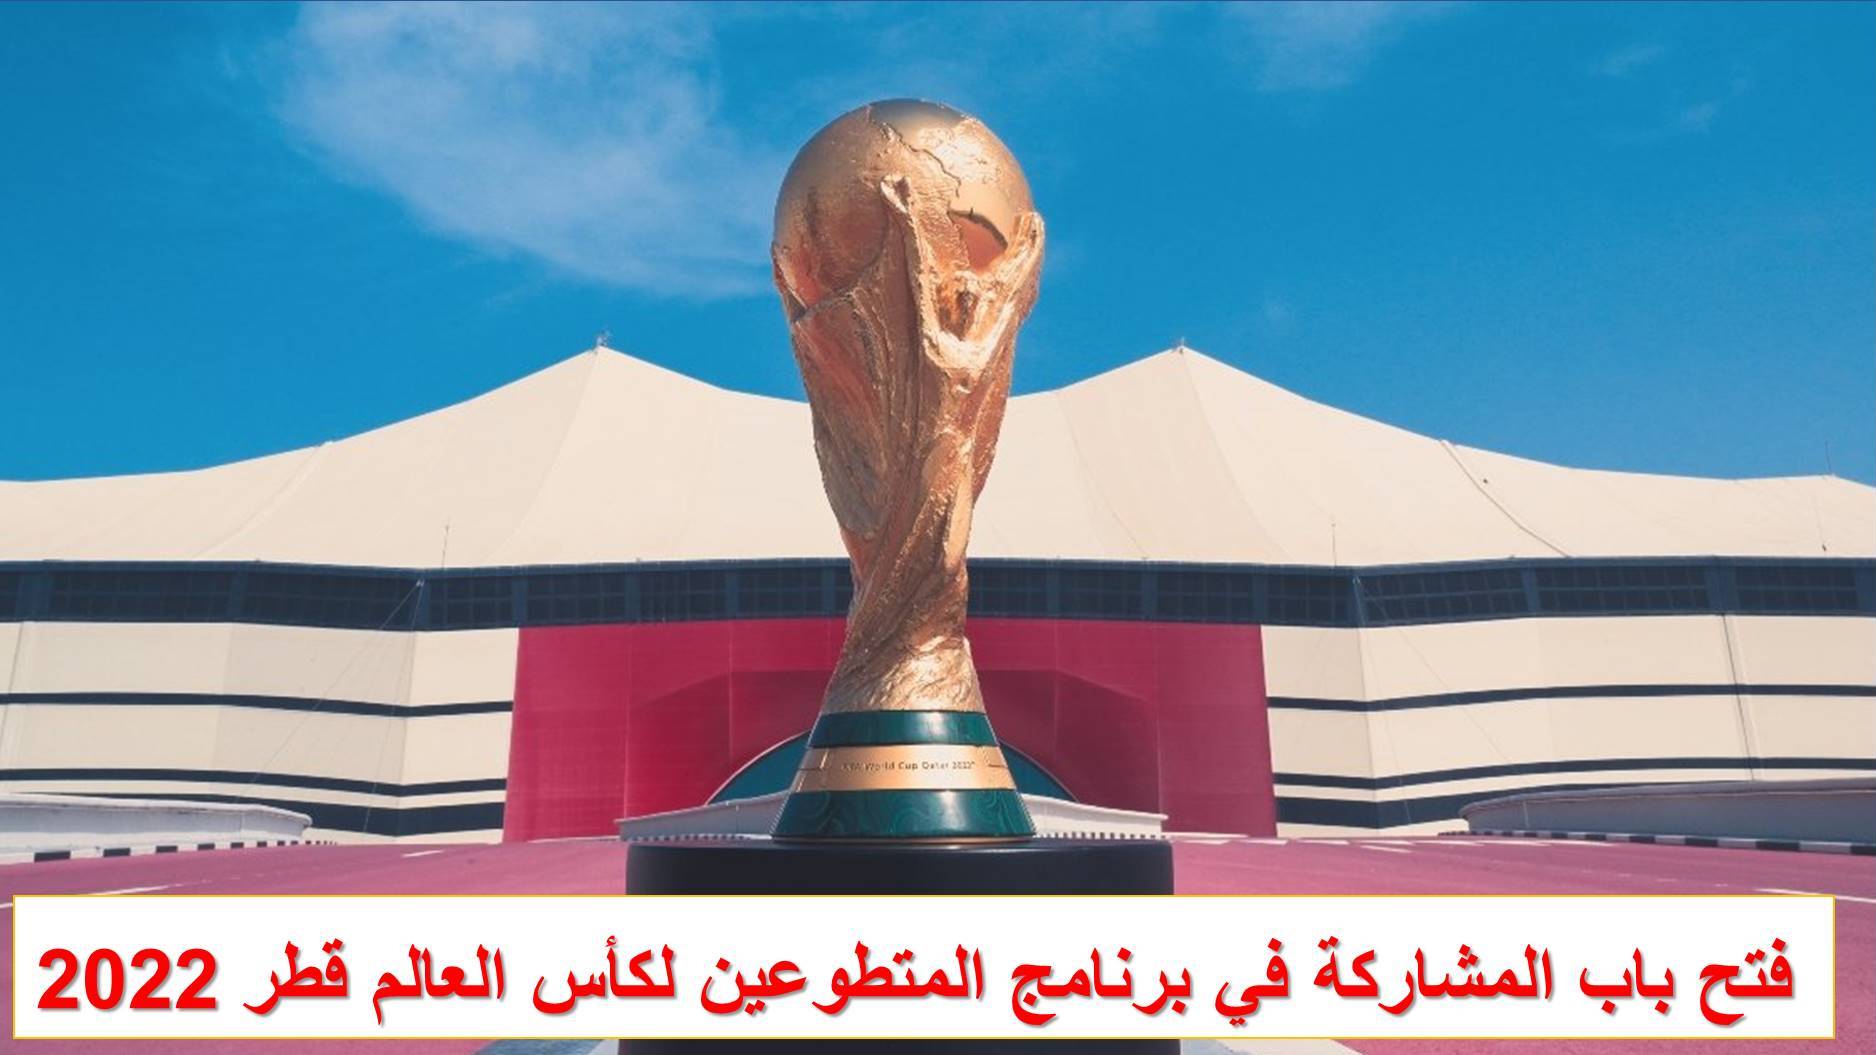 قطر تفتح باب التطوع لكأس العالم 2022 وتوظيف العماله